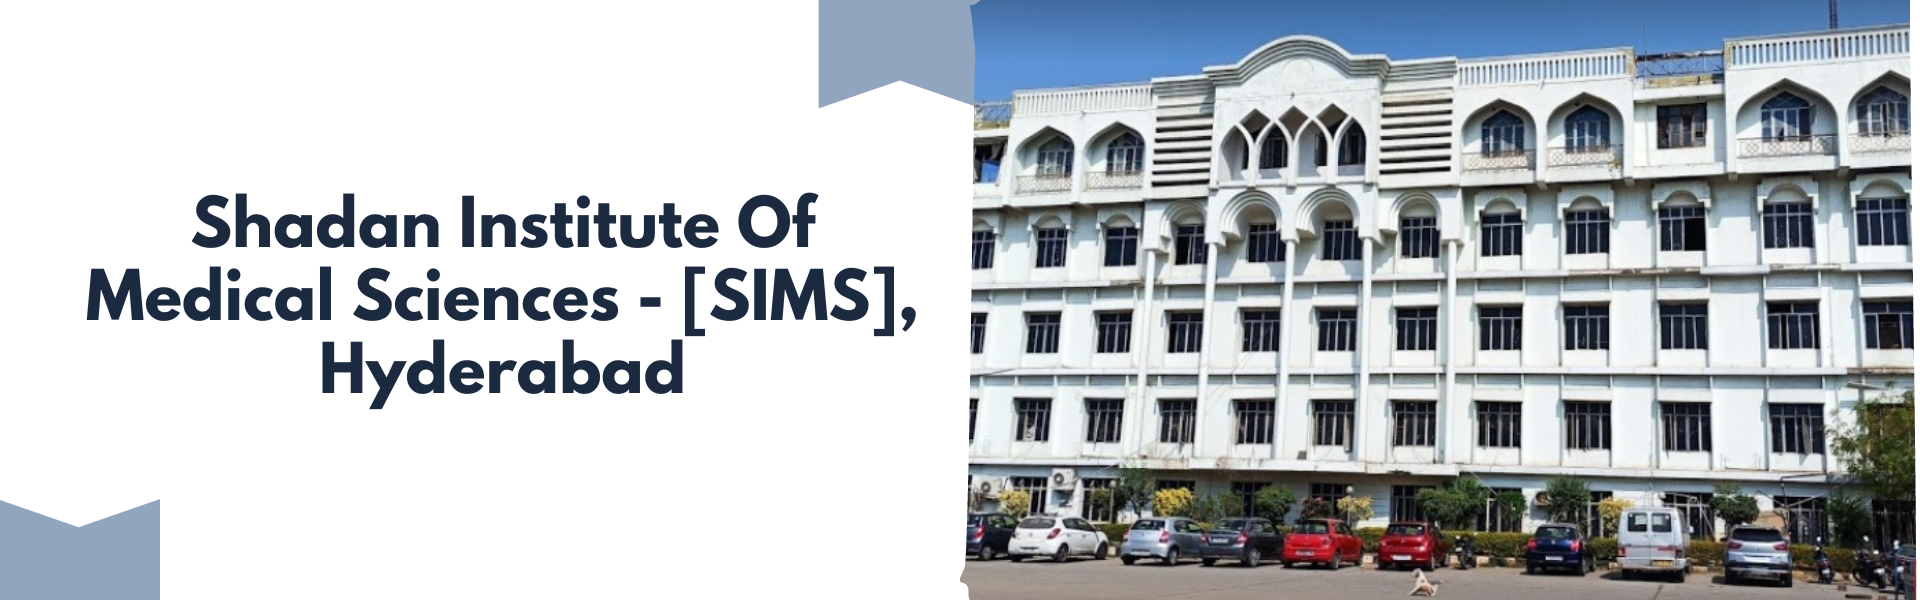 Shadan Institute Of Medical Sciences - [SIMS], Hyderabad